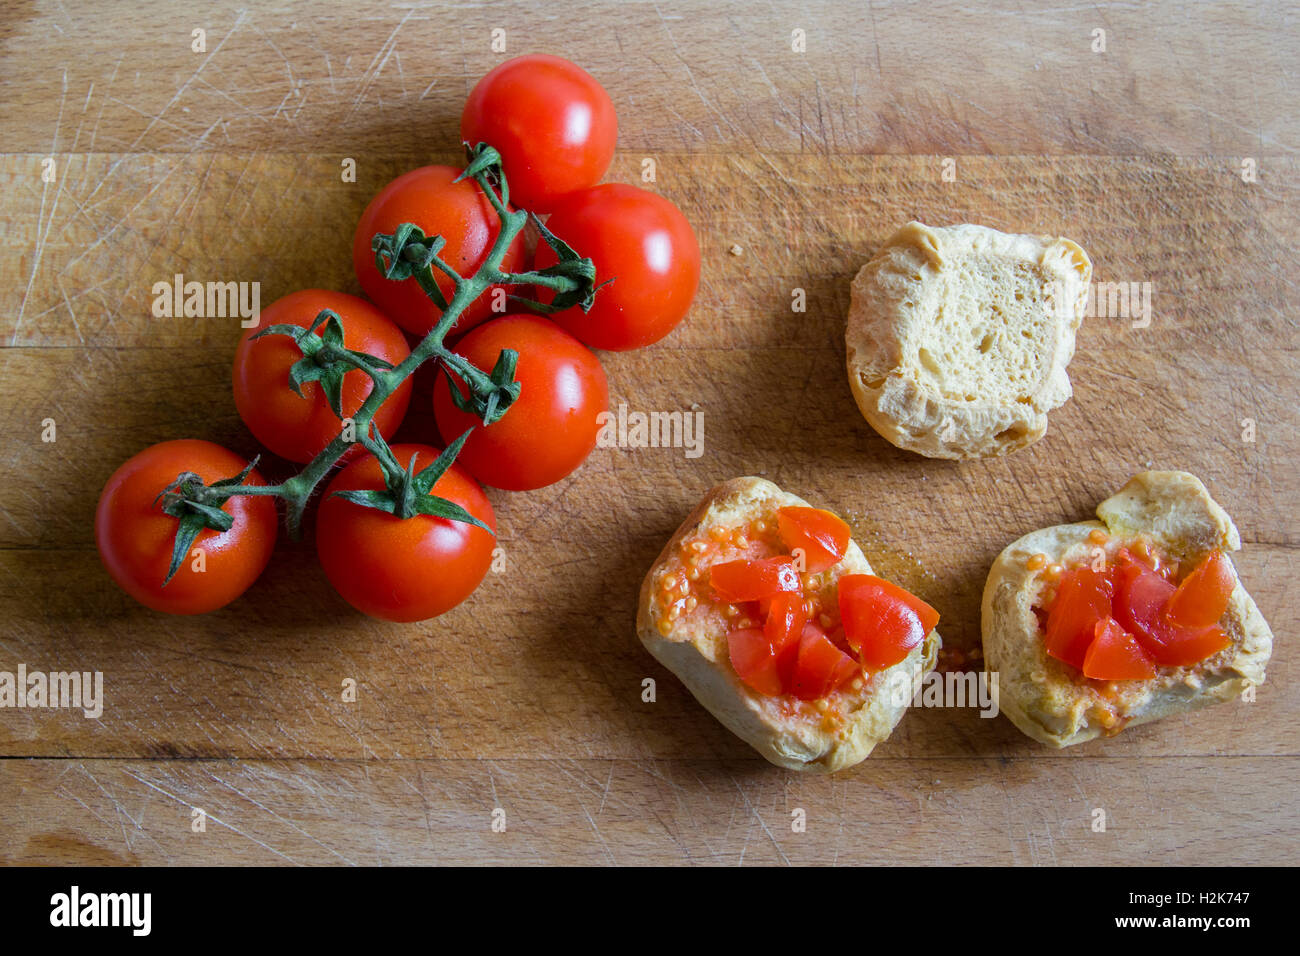 Pane con pomodori sul tagliere. Frise, friselle Foto Stock